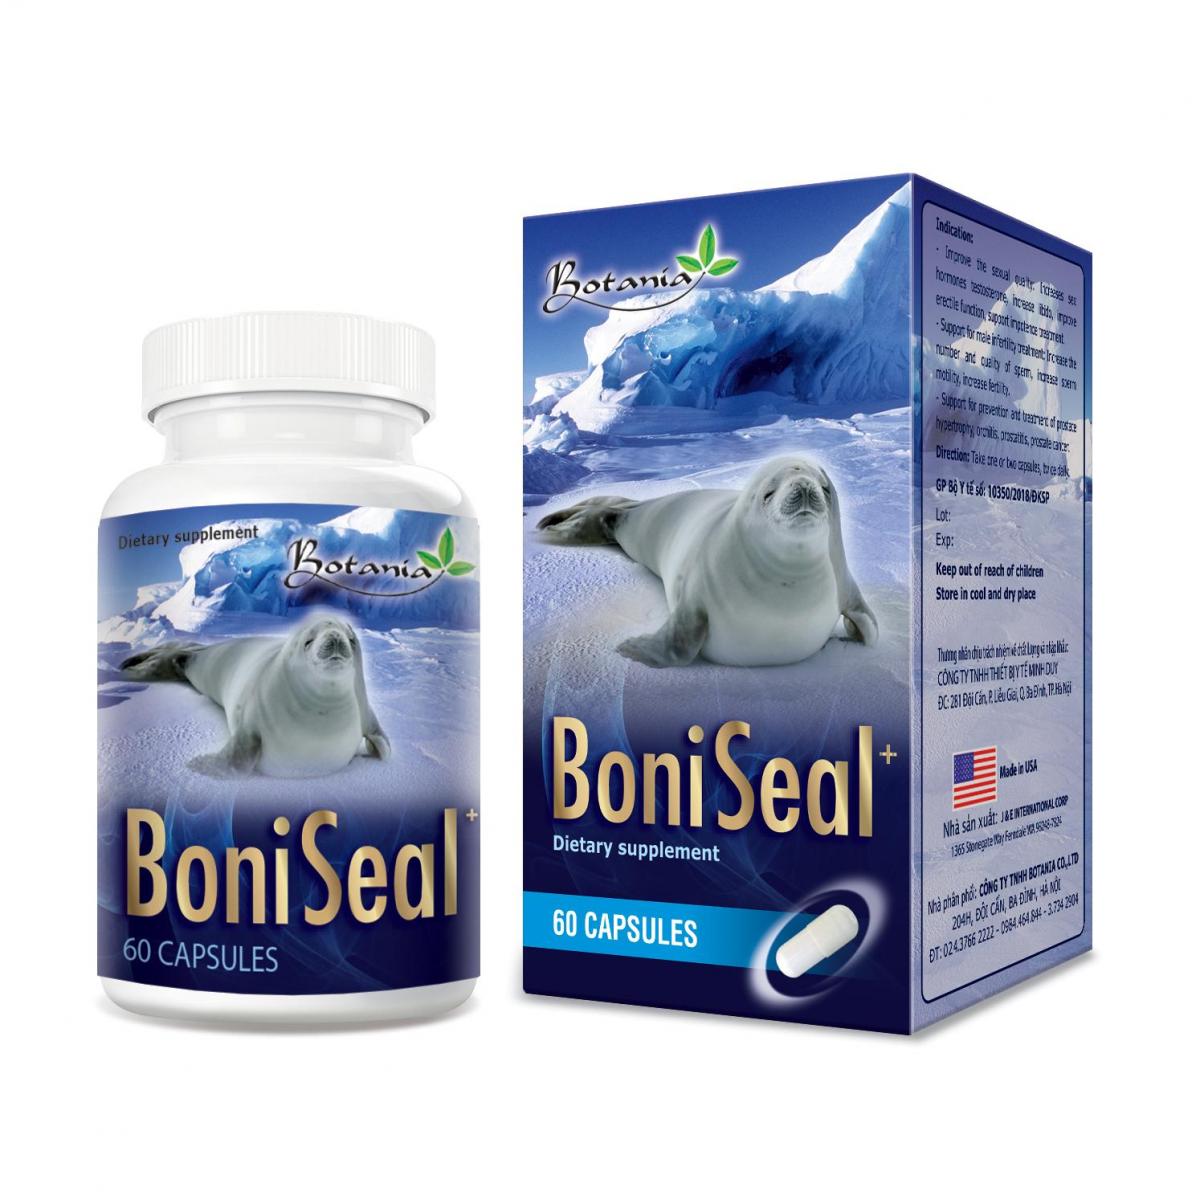 BoniSeal + - Sản phẩm hoàn hảo dành cho nam giới xuất tinh sớm